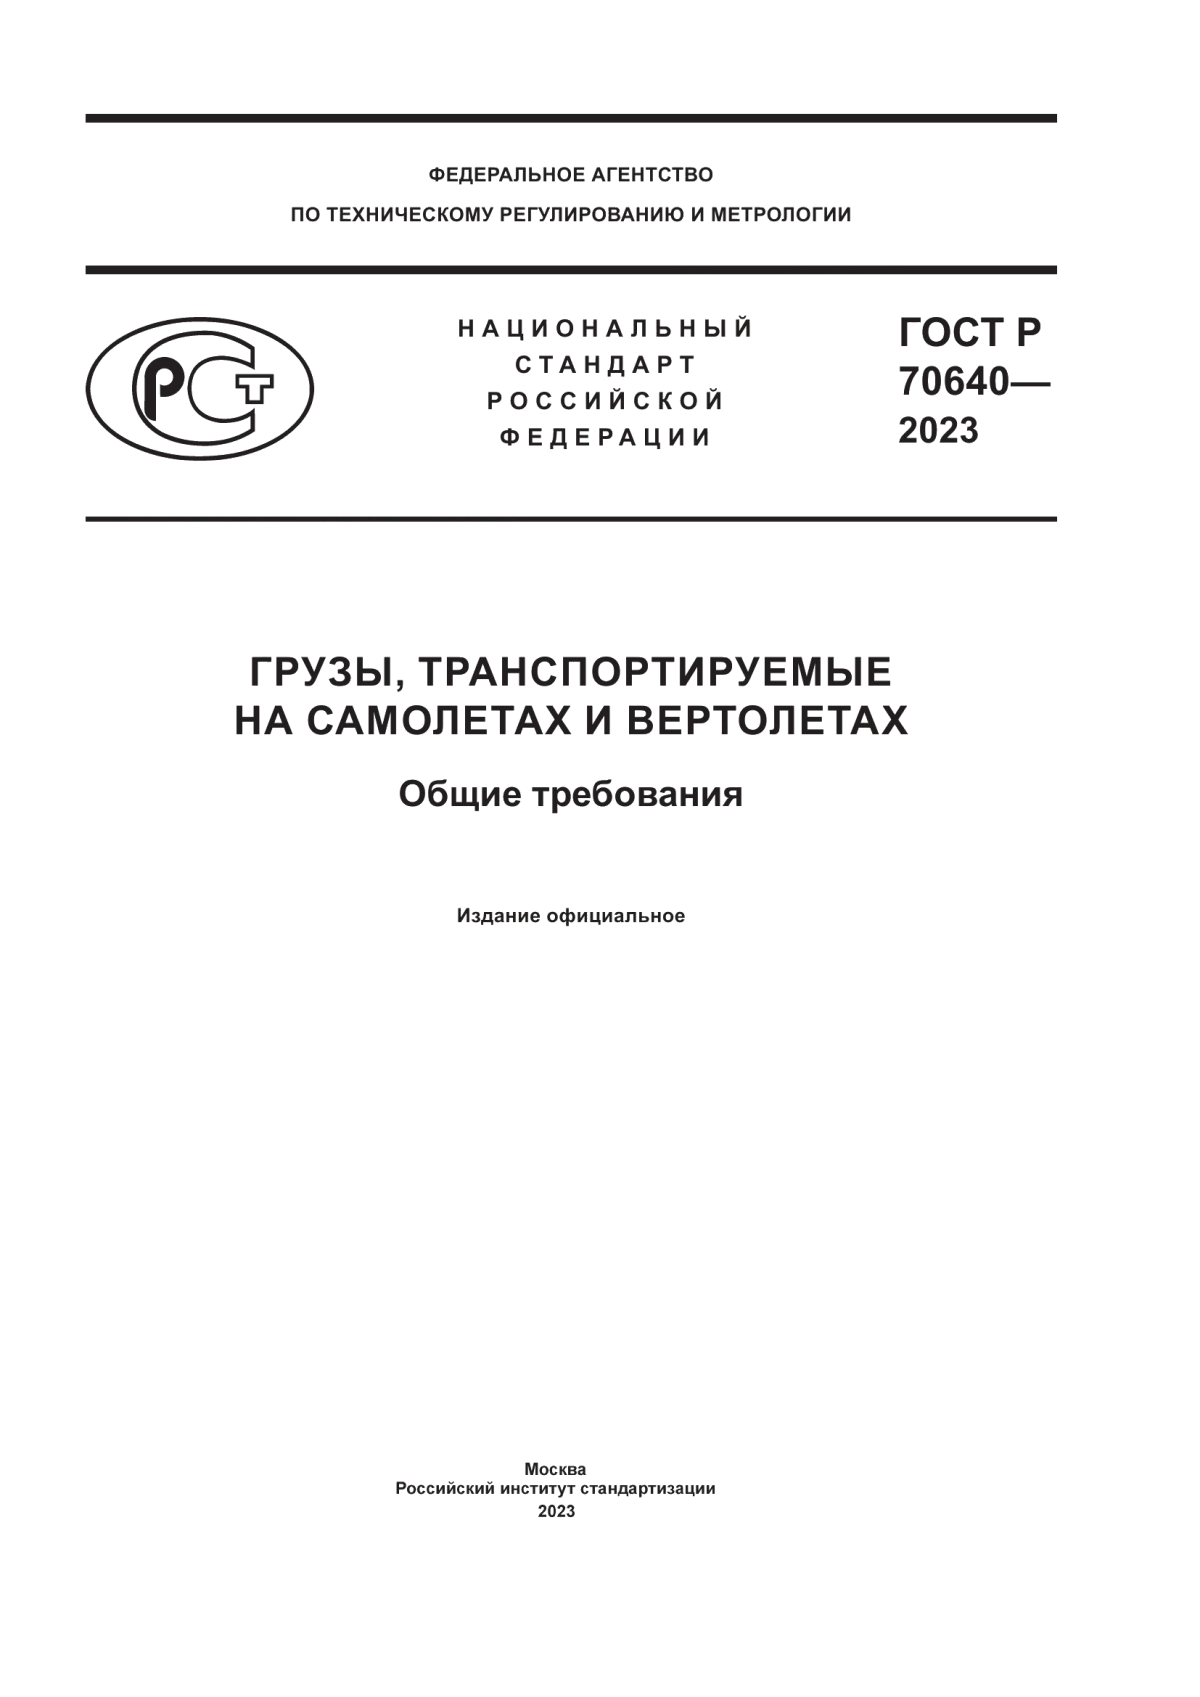 ГОСТ Р 70640-2023 Грузы, транспортируемые на самолетах и вертолетах. Общие требования